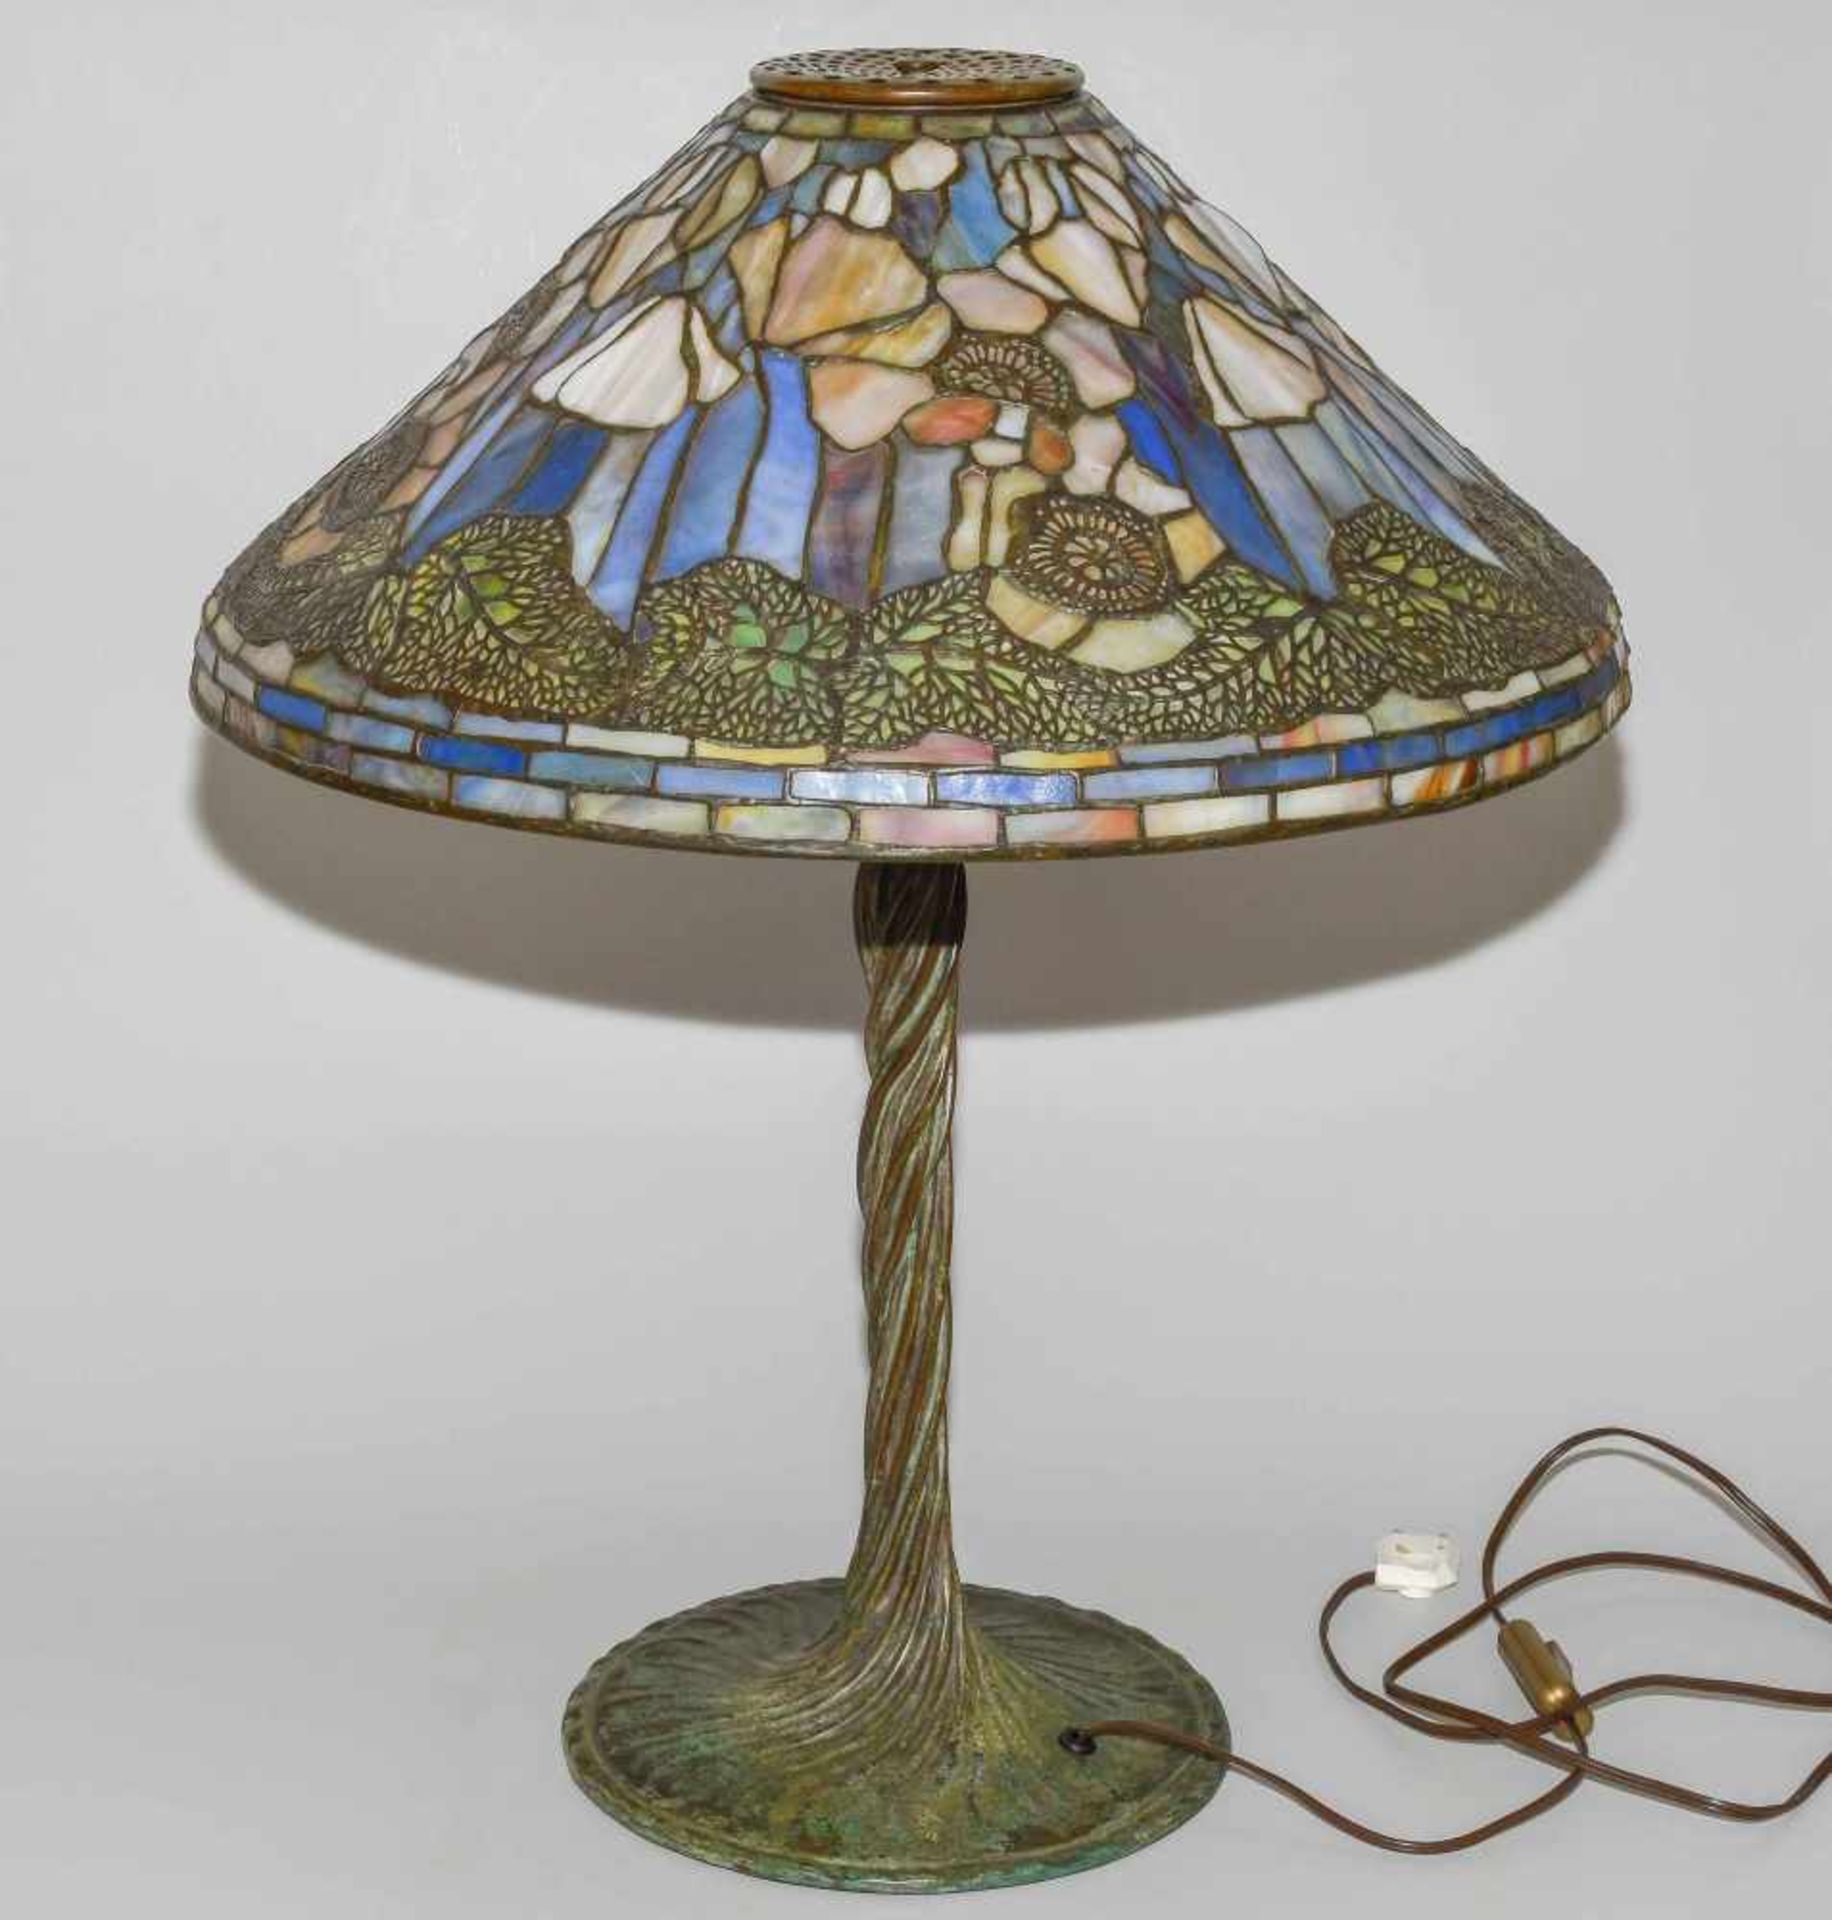 Tiffany Studios New YorkTischlampe "Poppy". Schirm aus "leaded Glass", weisser Mohn mit Blättern, - Image 19 of 24